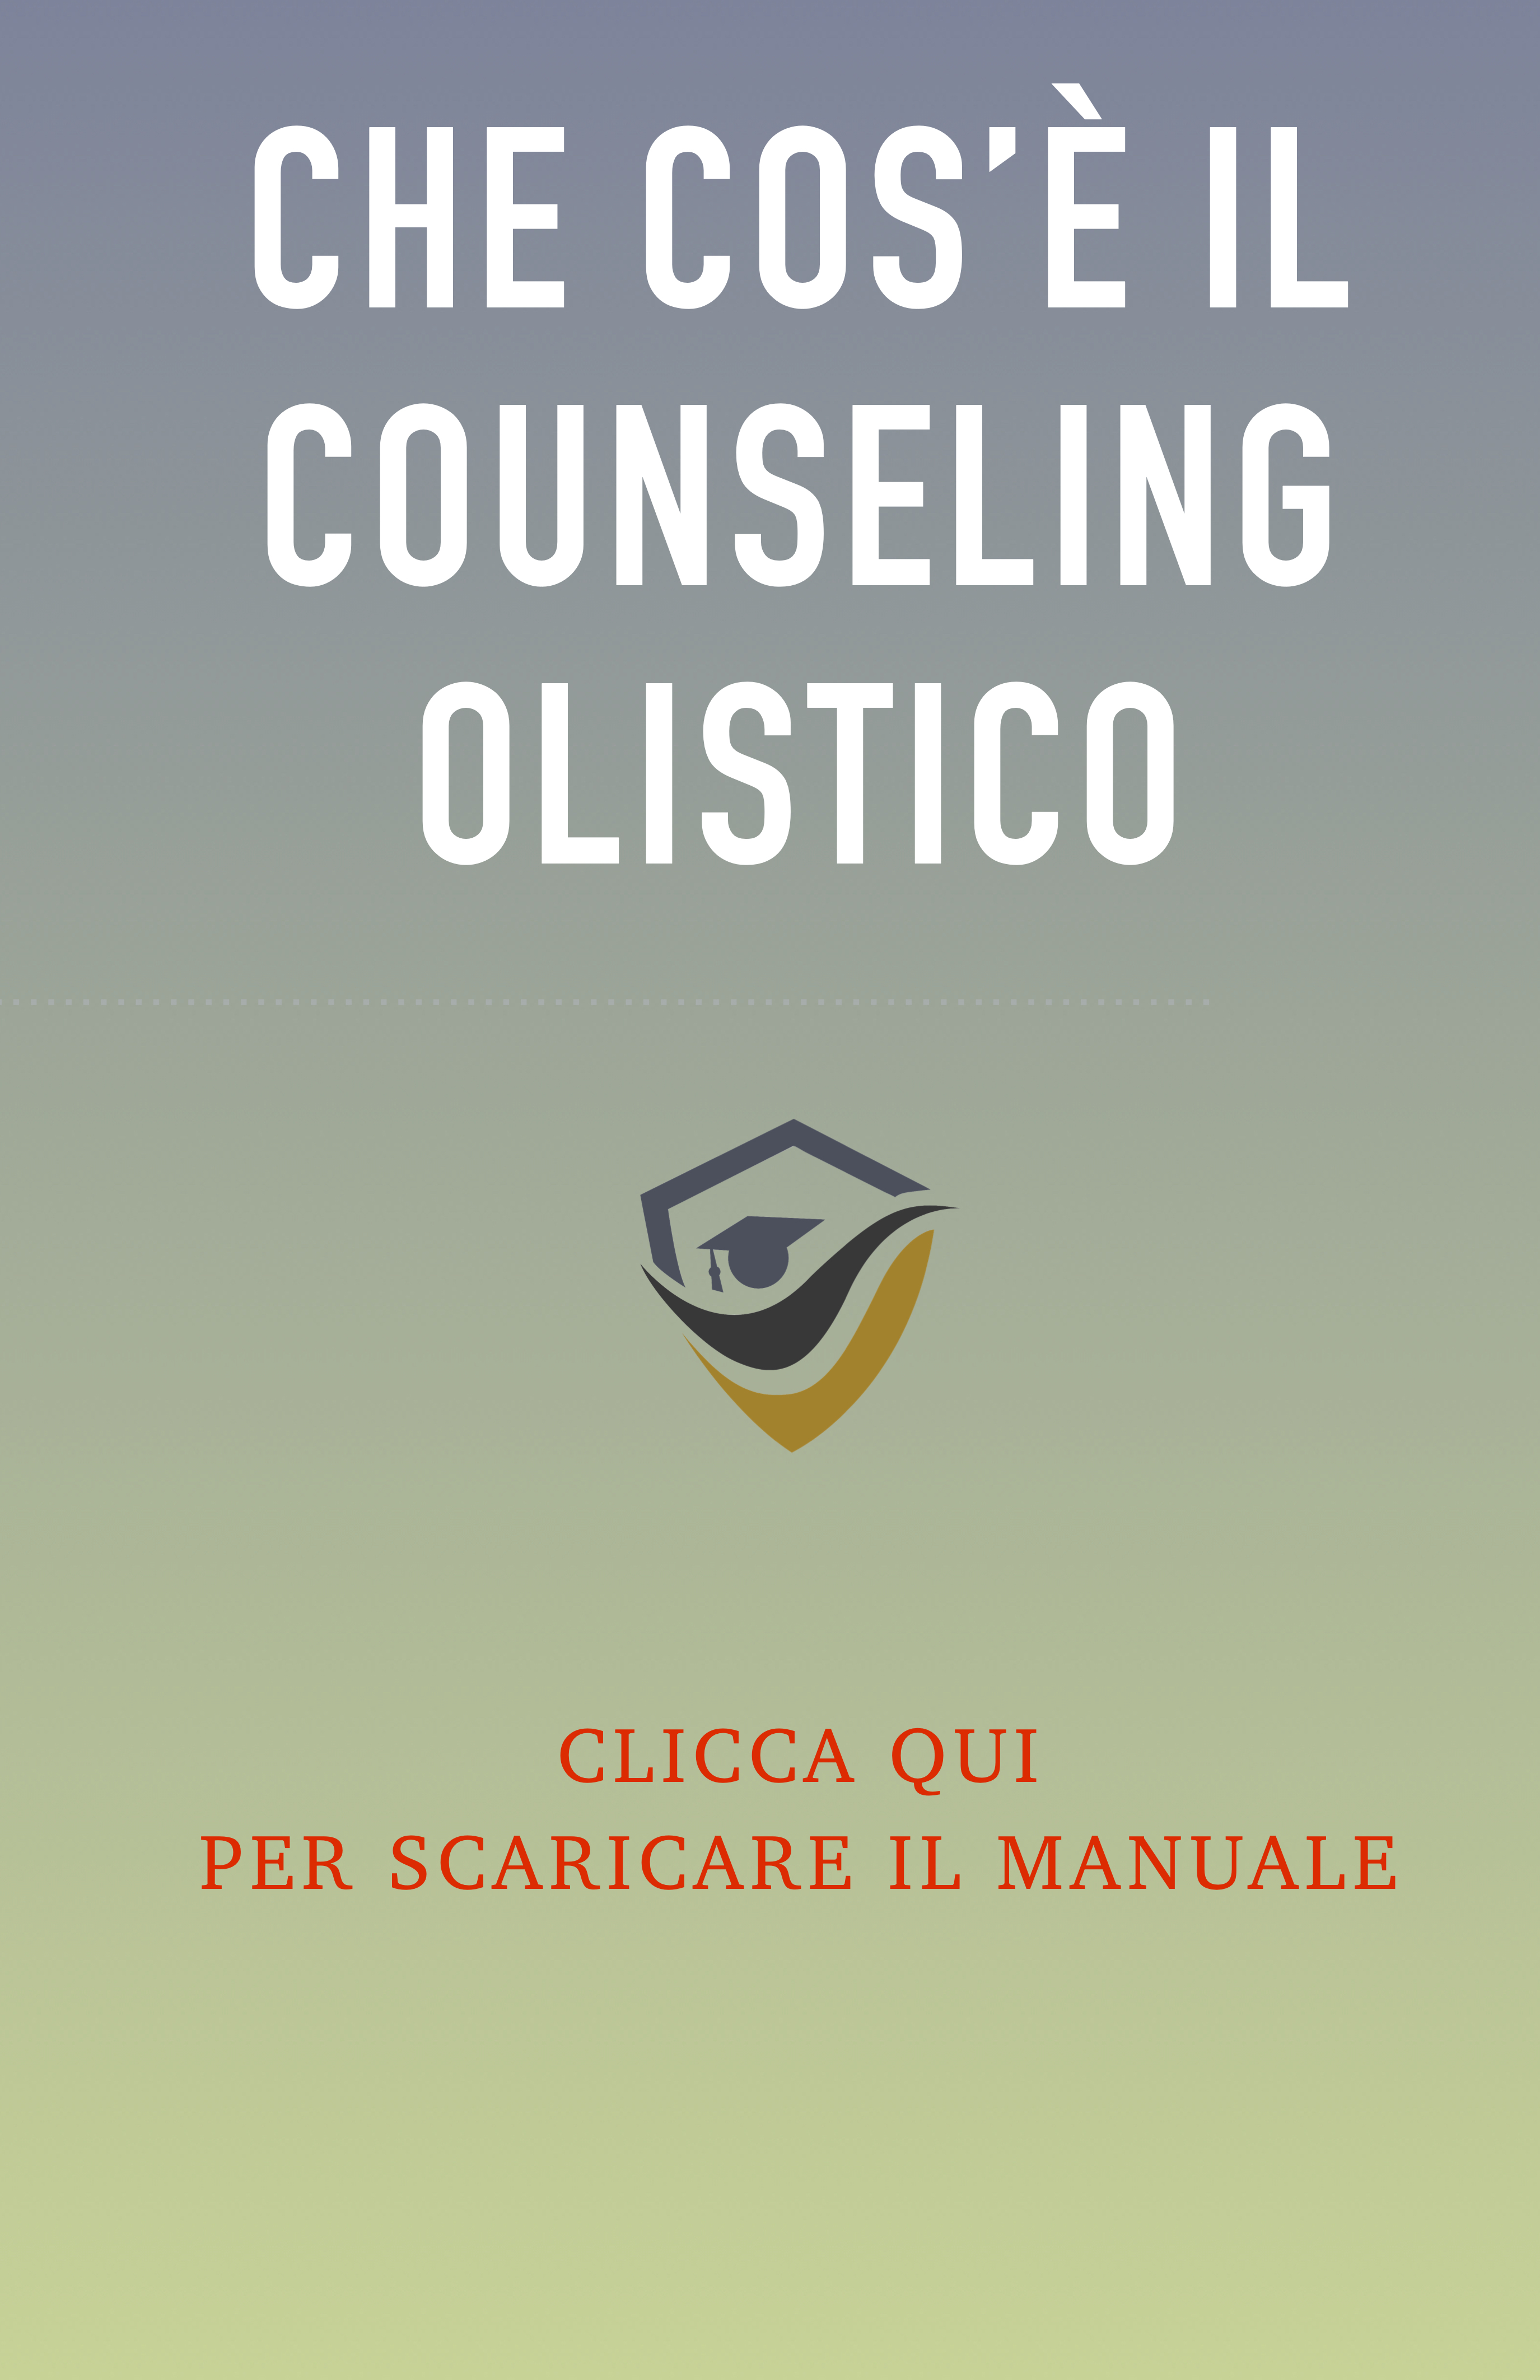 ebook gratuito : che cos'è il counseling olistico?